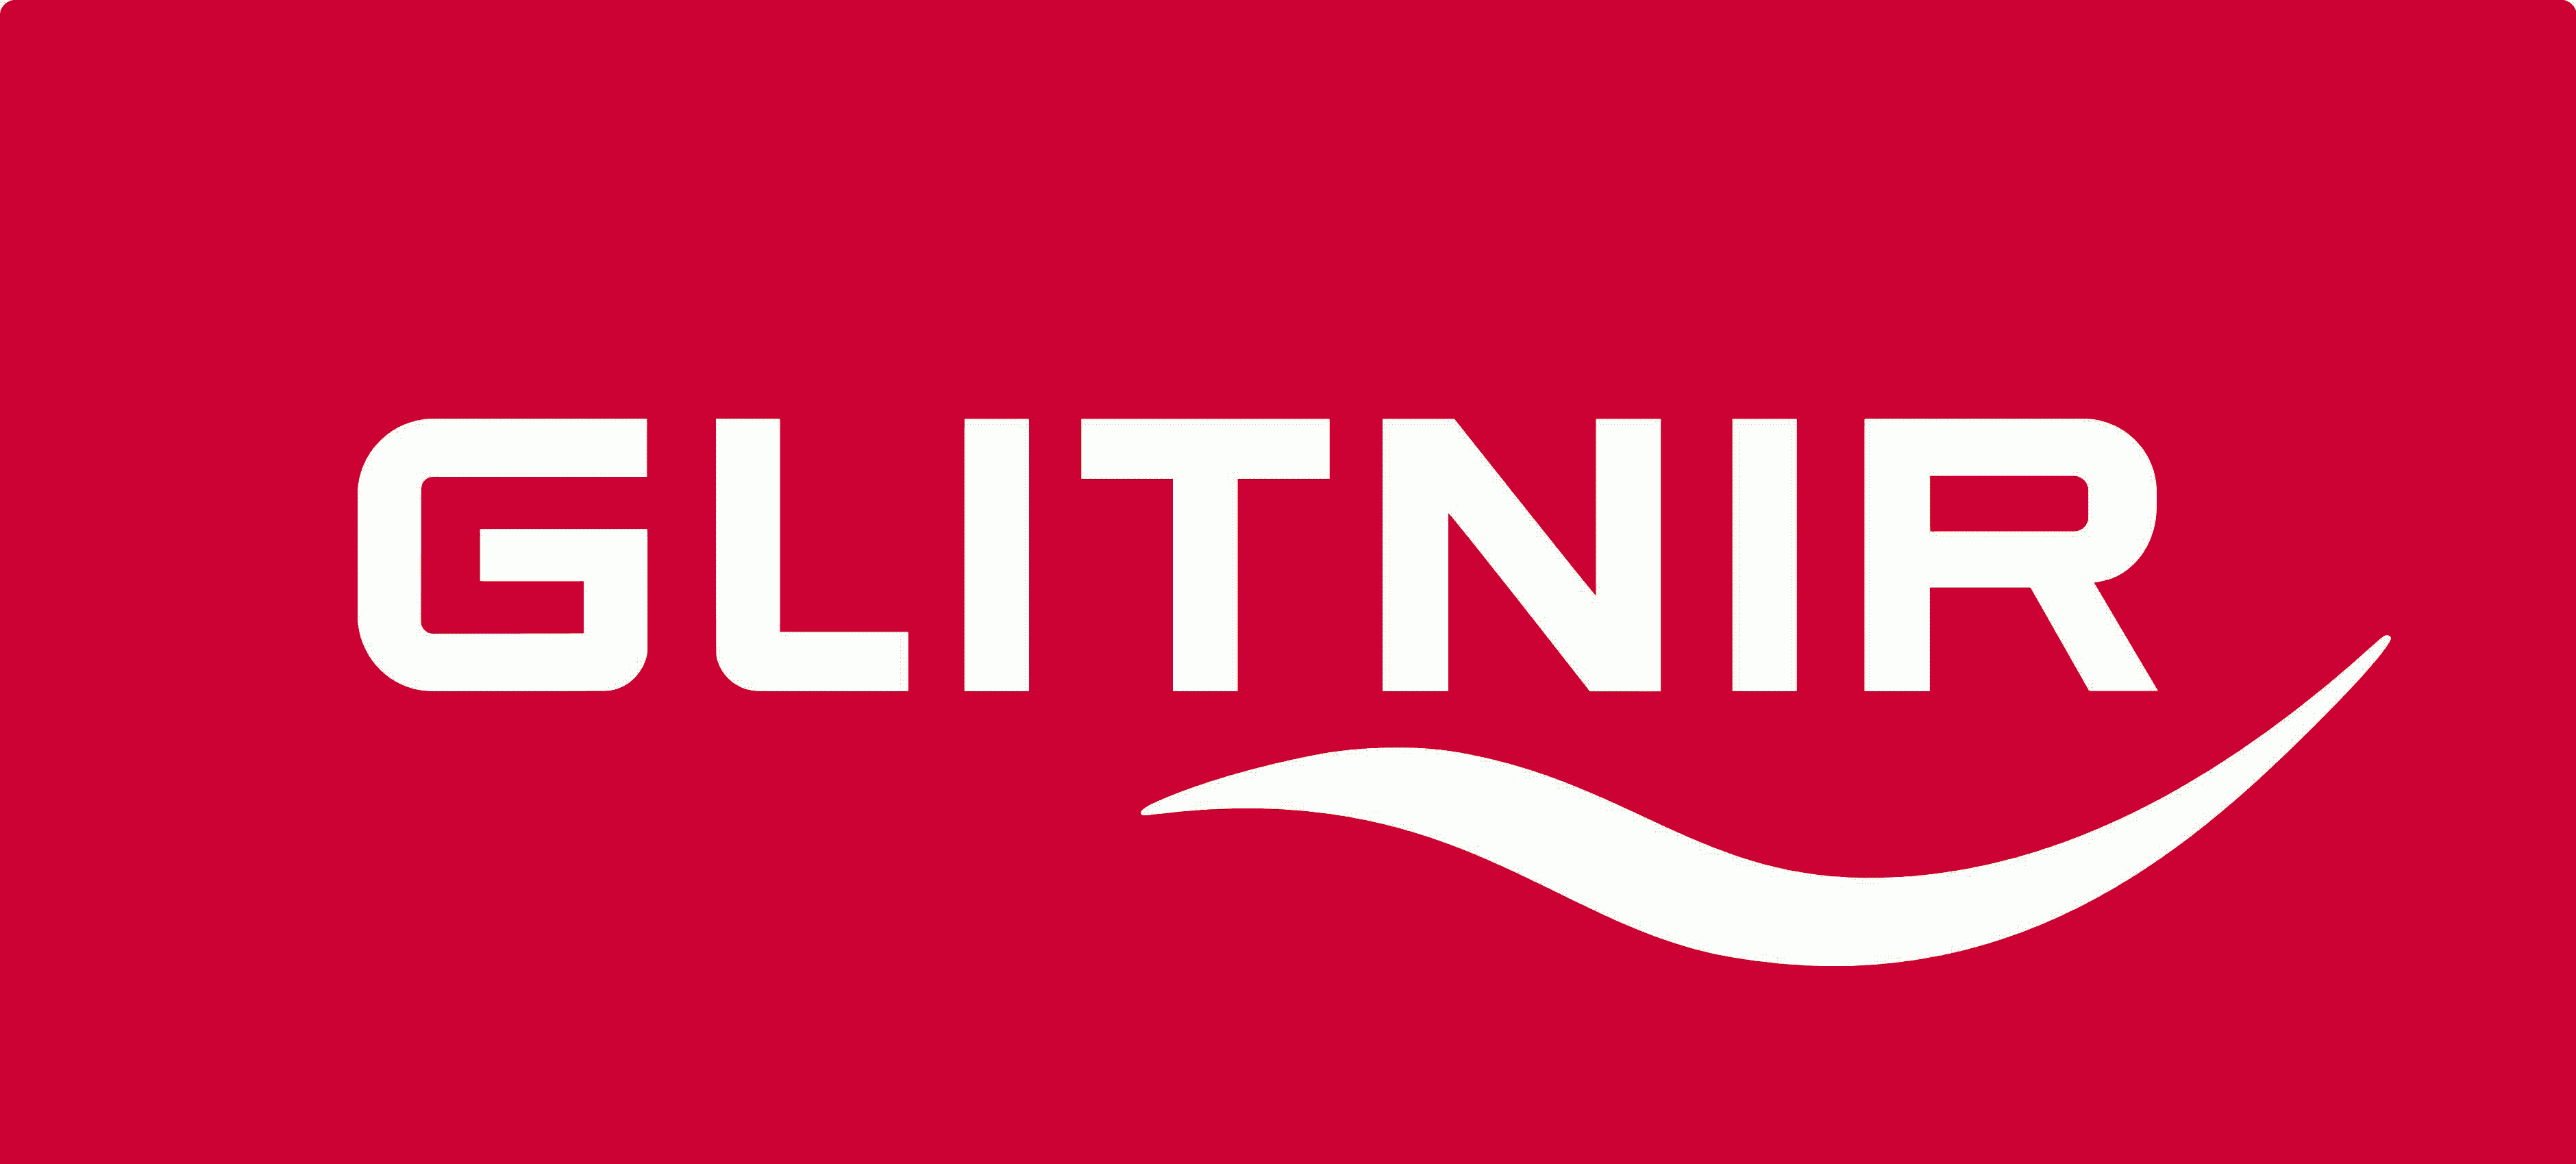 Логотип исландского банка Glitnir banki